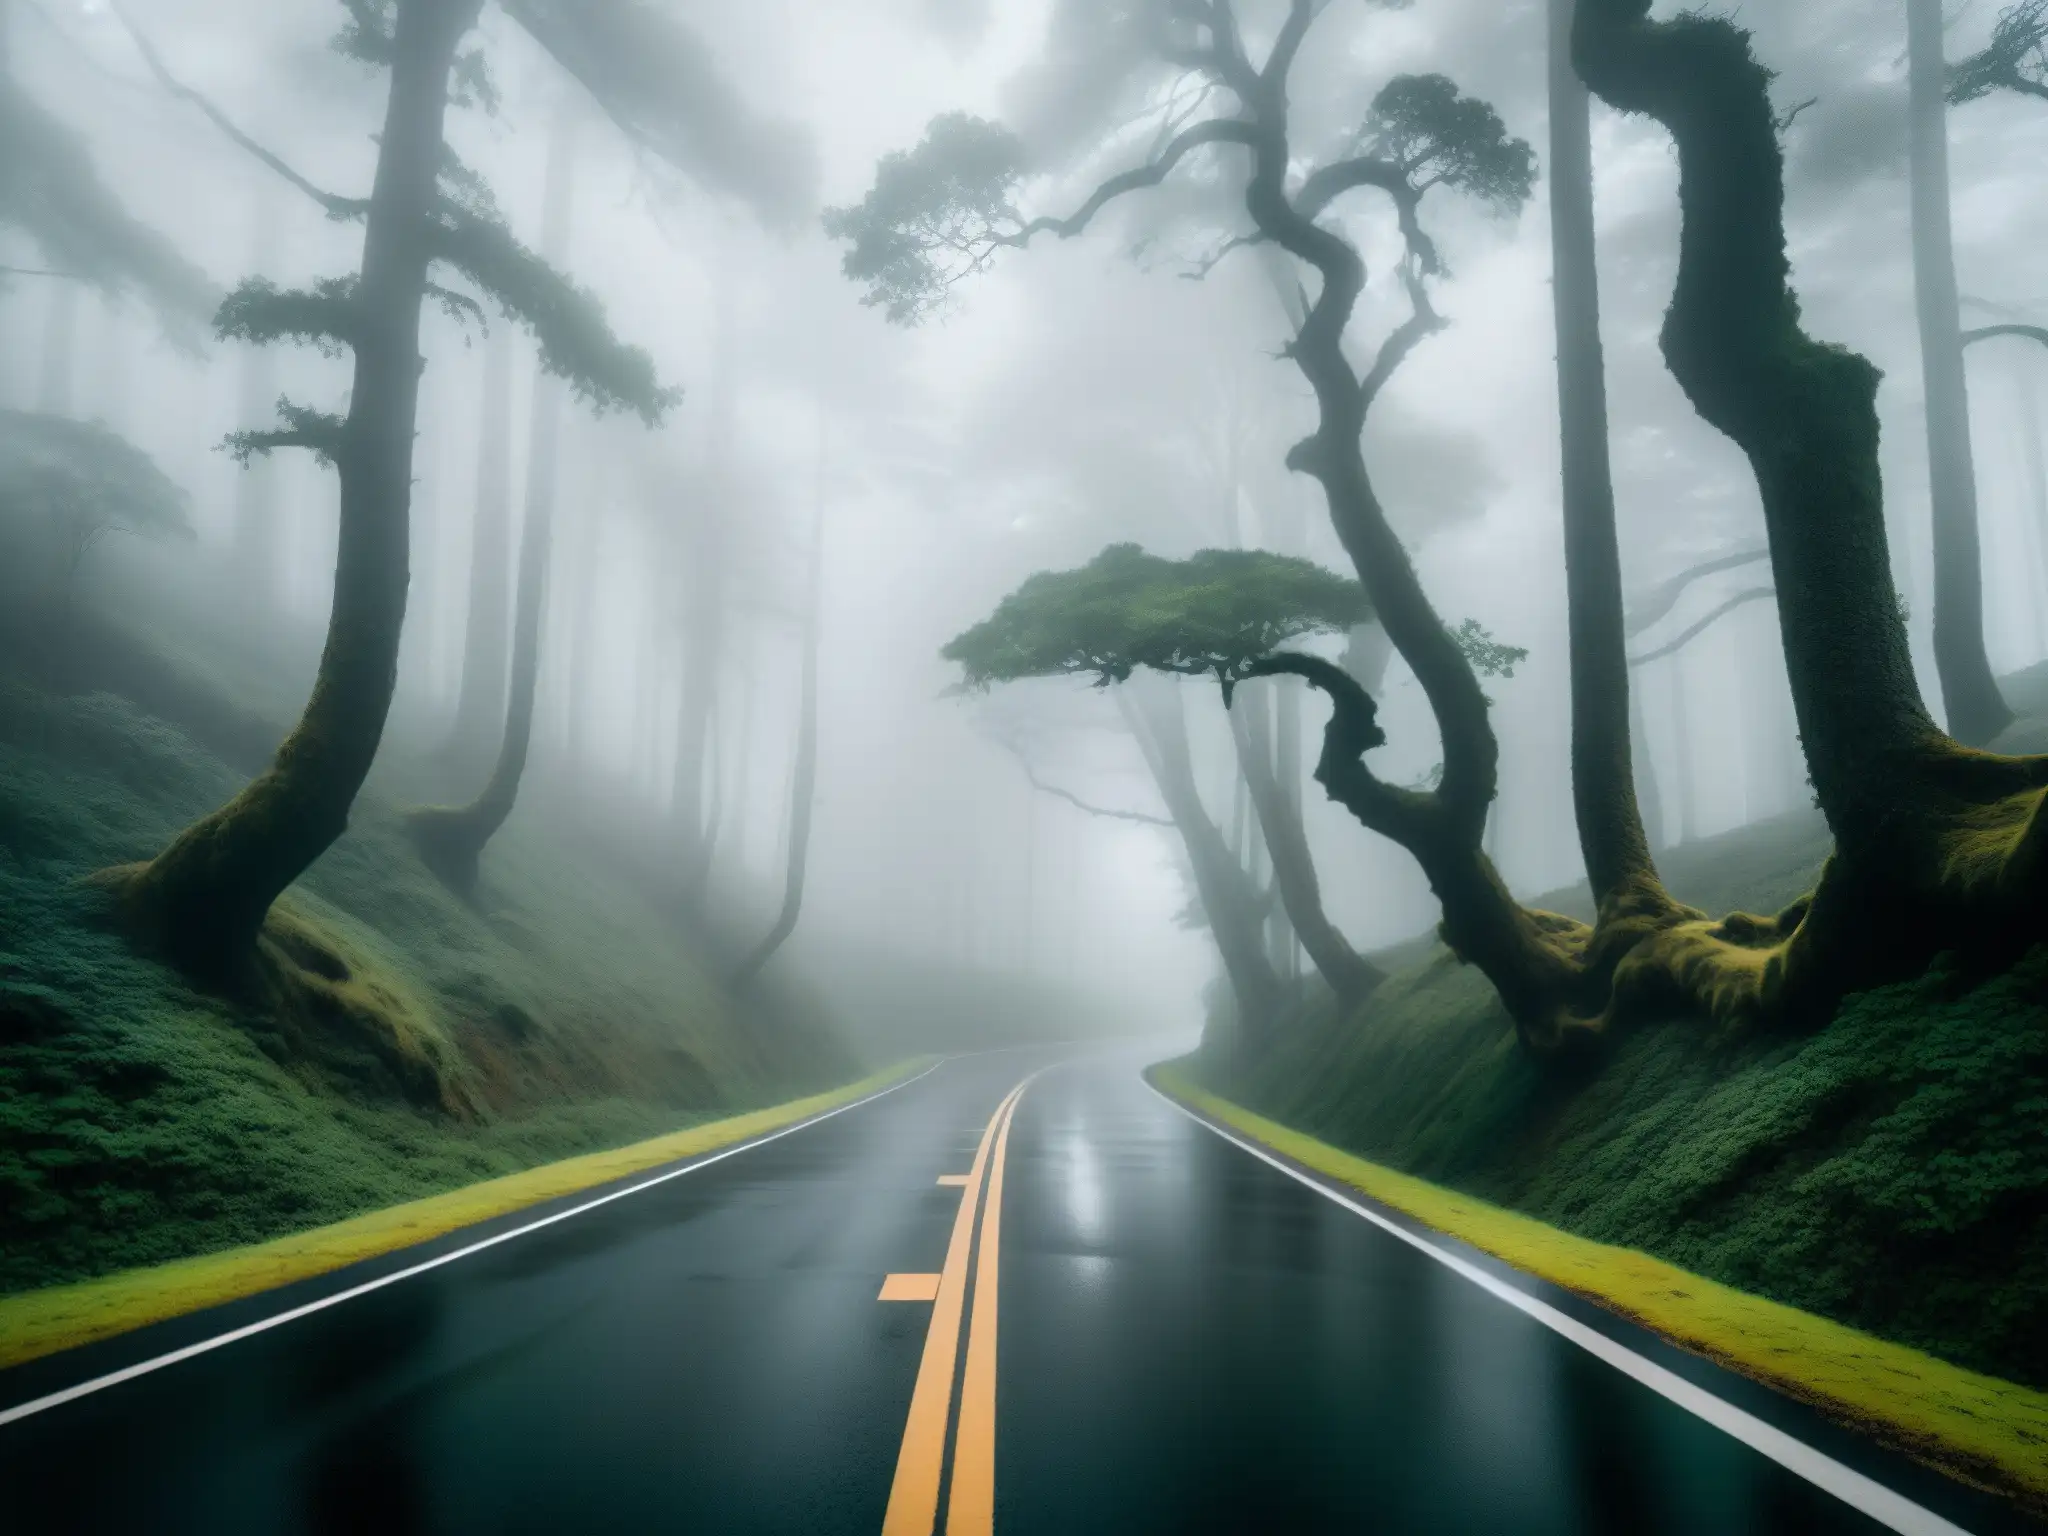 Carretera maldita: un camino solitario y neblinoso atraviesa un bosque denso, evocando misterio y temor